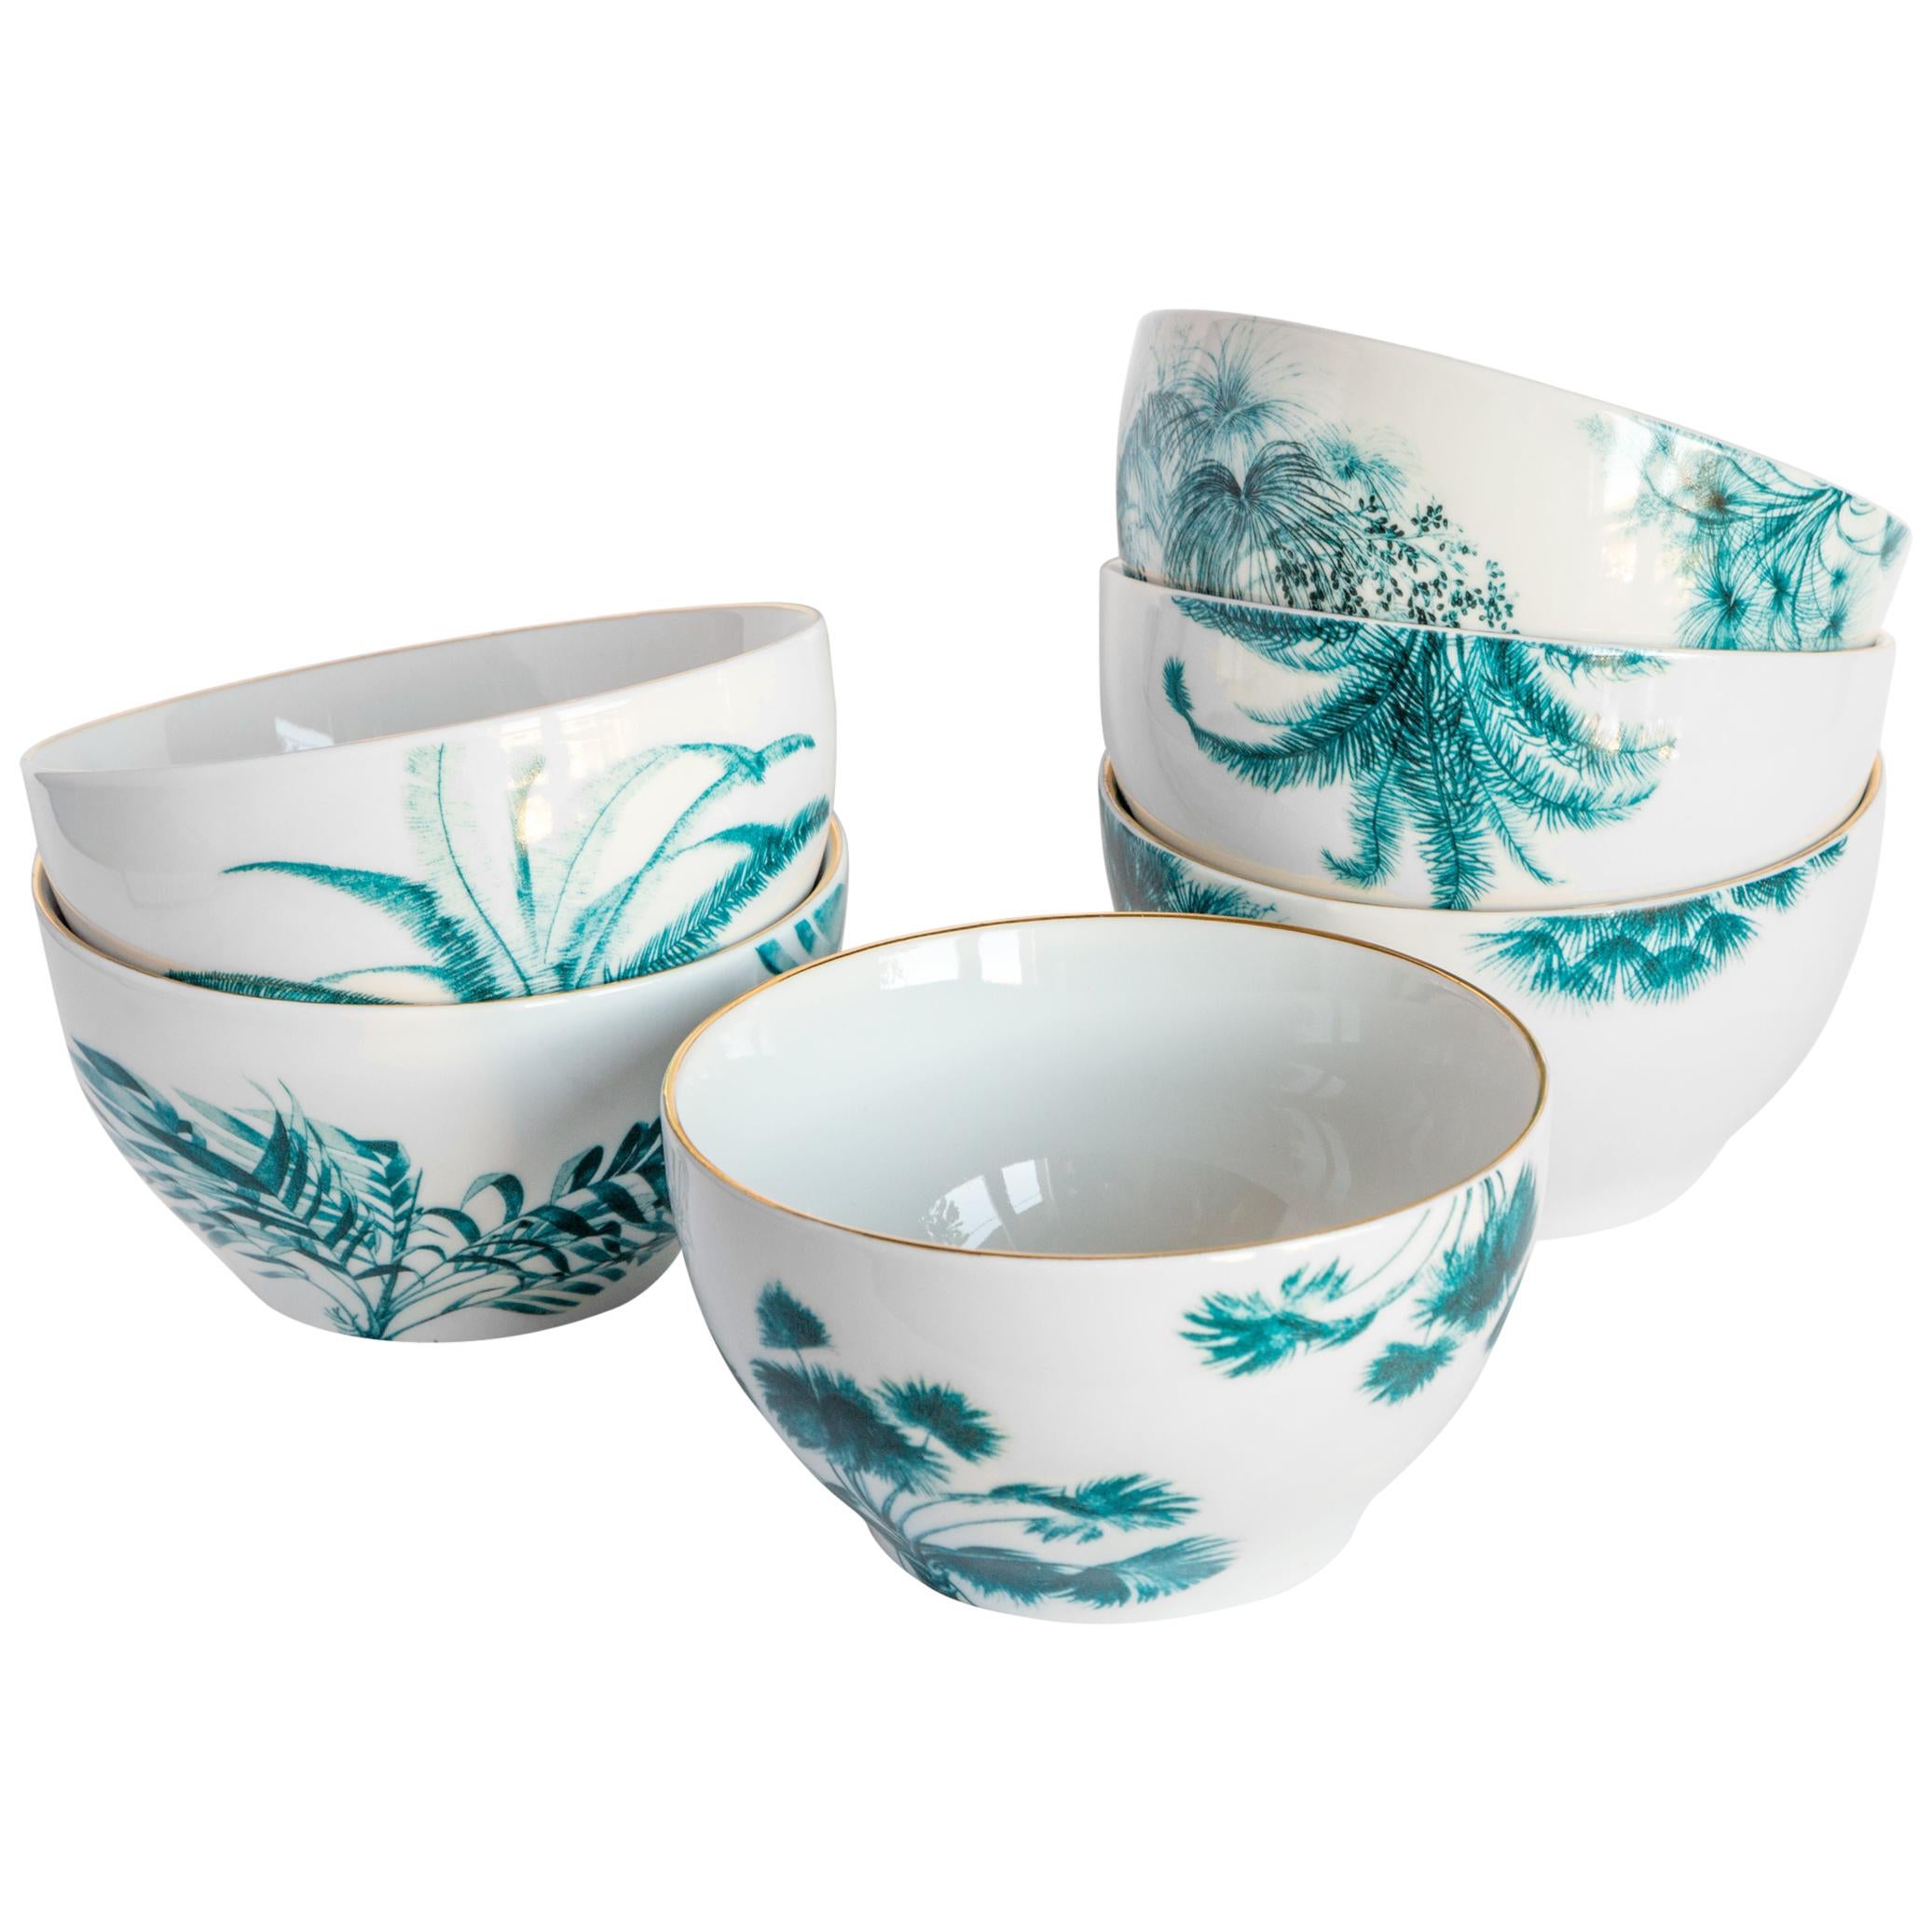 Las Palmas, Six Contemporary Porcelain Bowls with Decorative Design